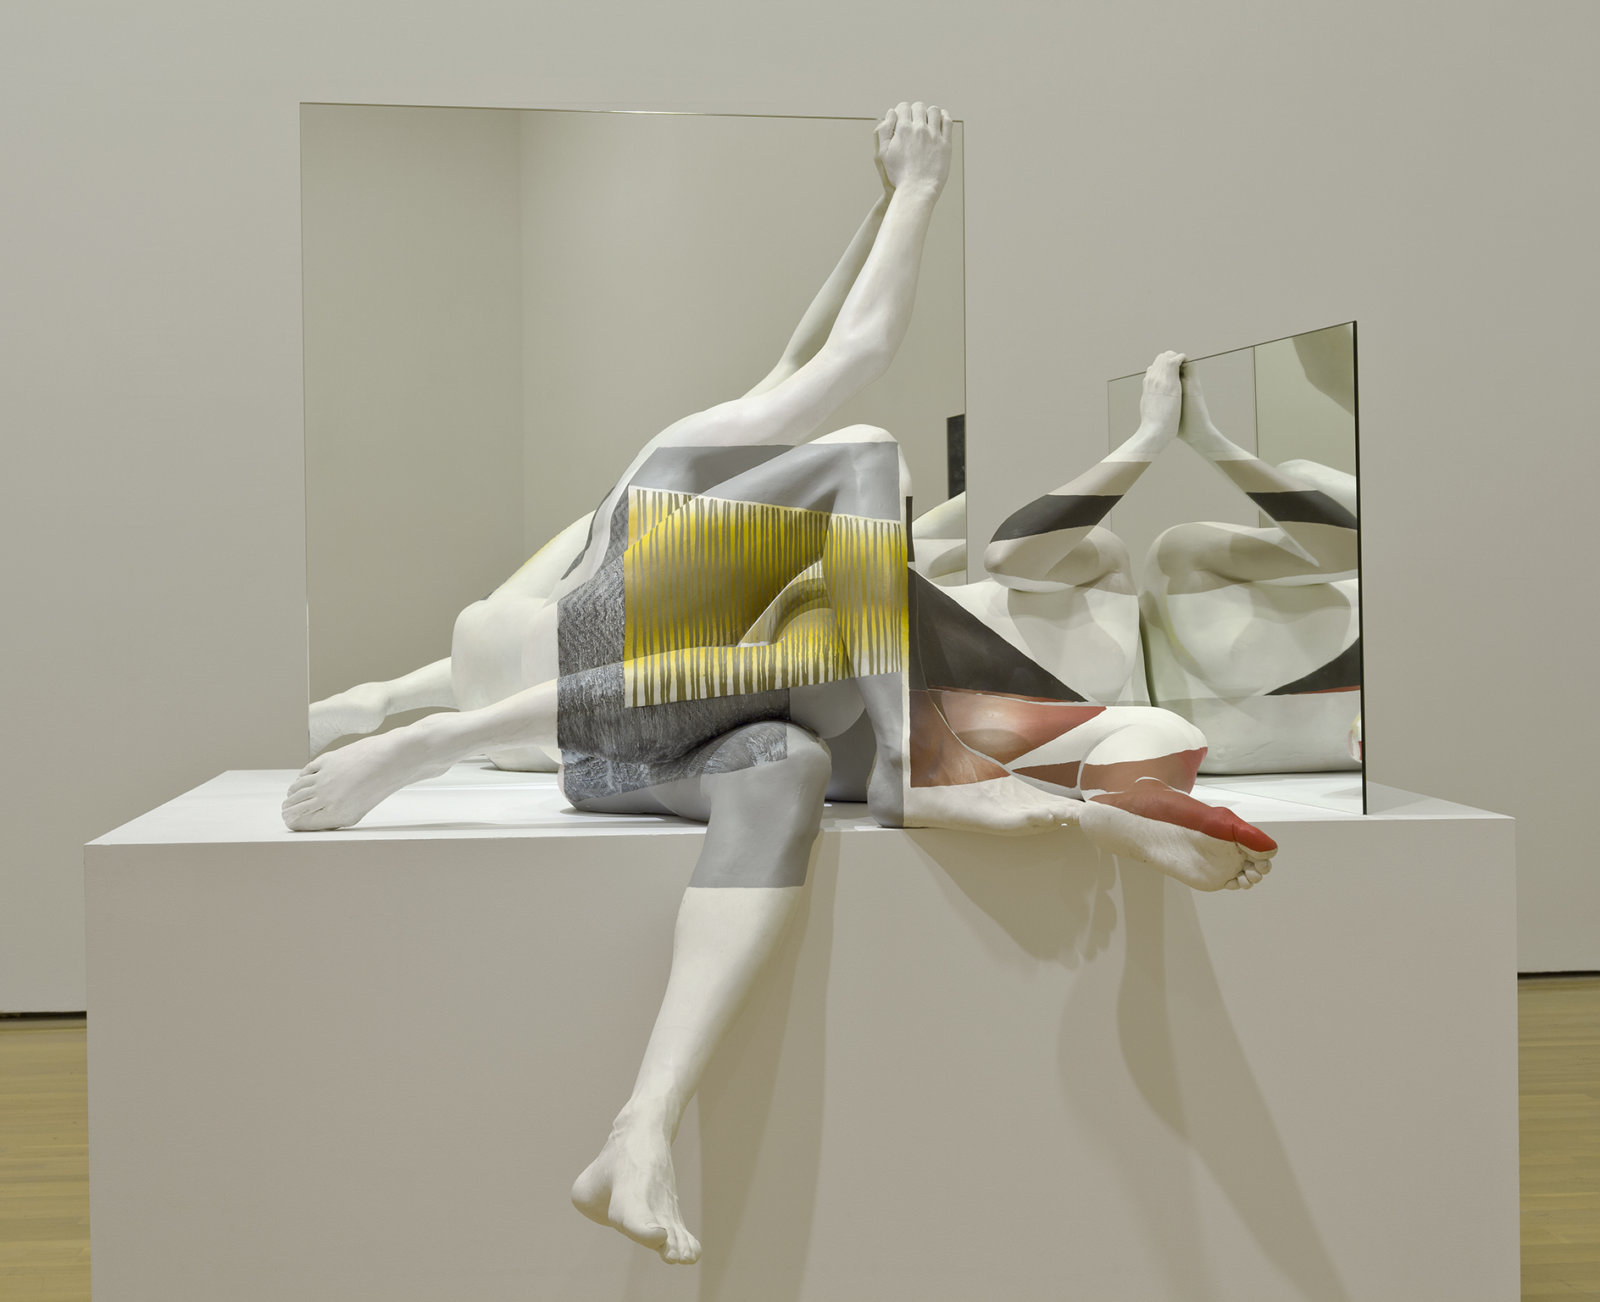 Valérie Blass, Dans la position très singulière qui est la mienn, 2012, plaster, mirror, pigment, wood, 66 x 63 x 61 in. (168 x 160 x 155 cm)